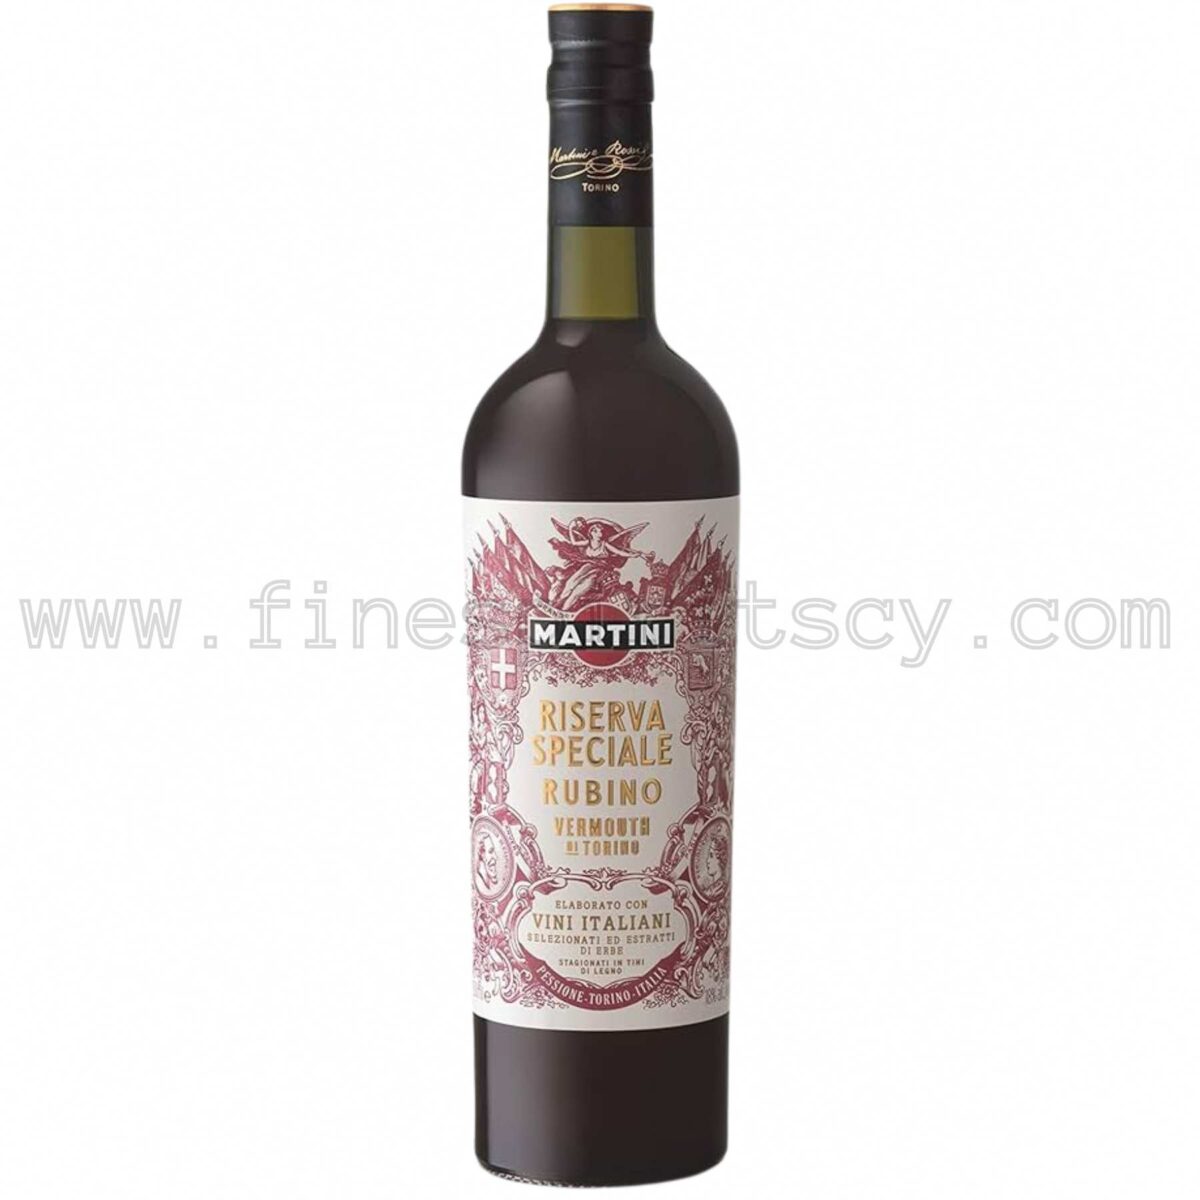 Martini Rubino Riserva Speciale Vermouth Cyprus Price Order Buy Shop 75cl